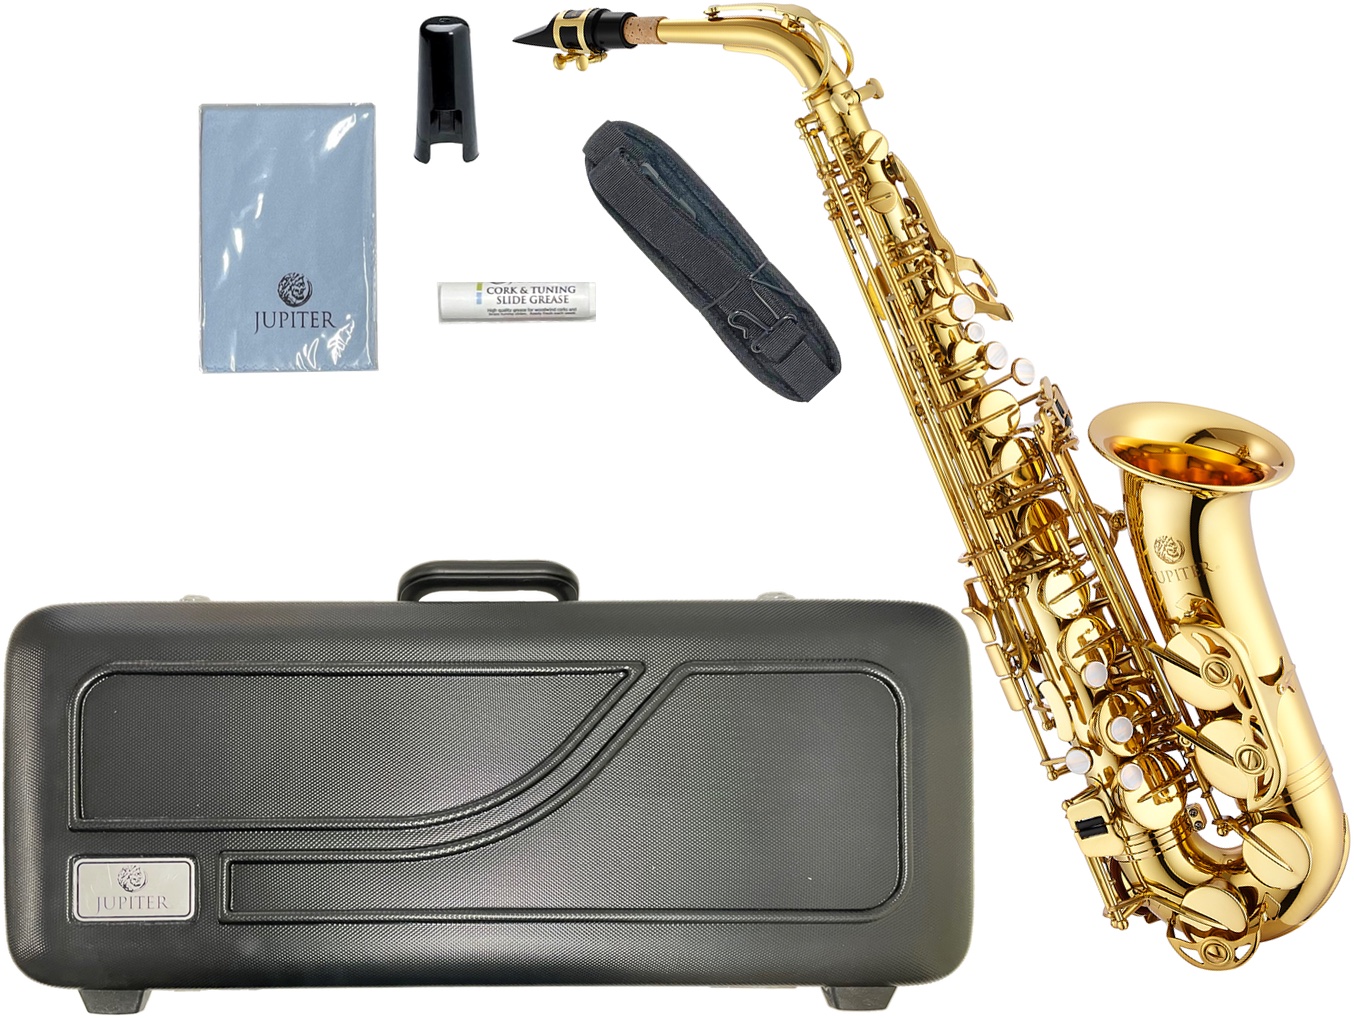 JUPITER ( ジュピター ) JAS500 アルトサックス 新品 管楽器 